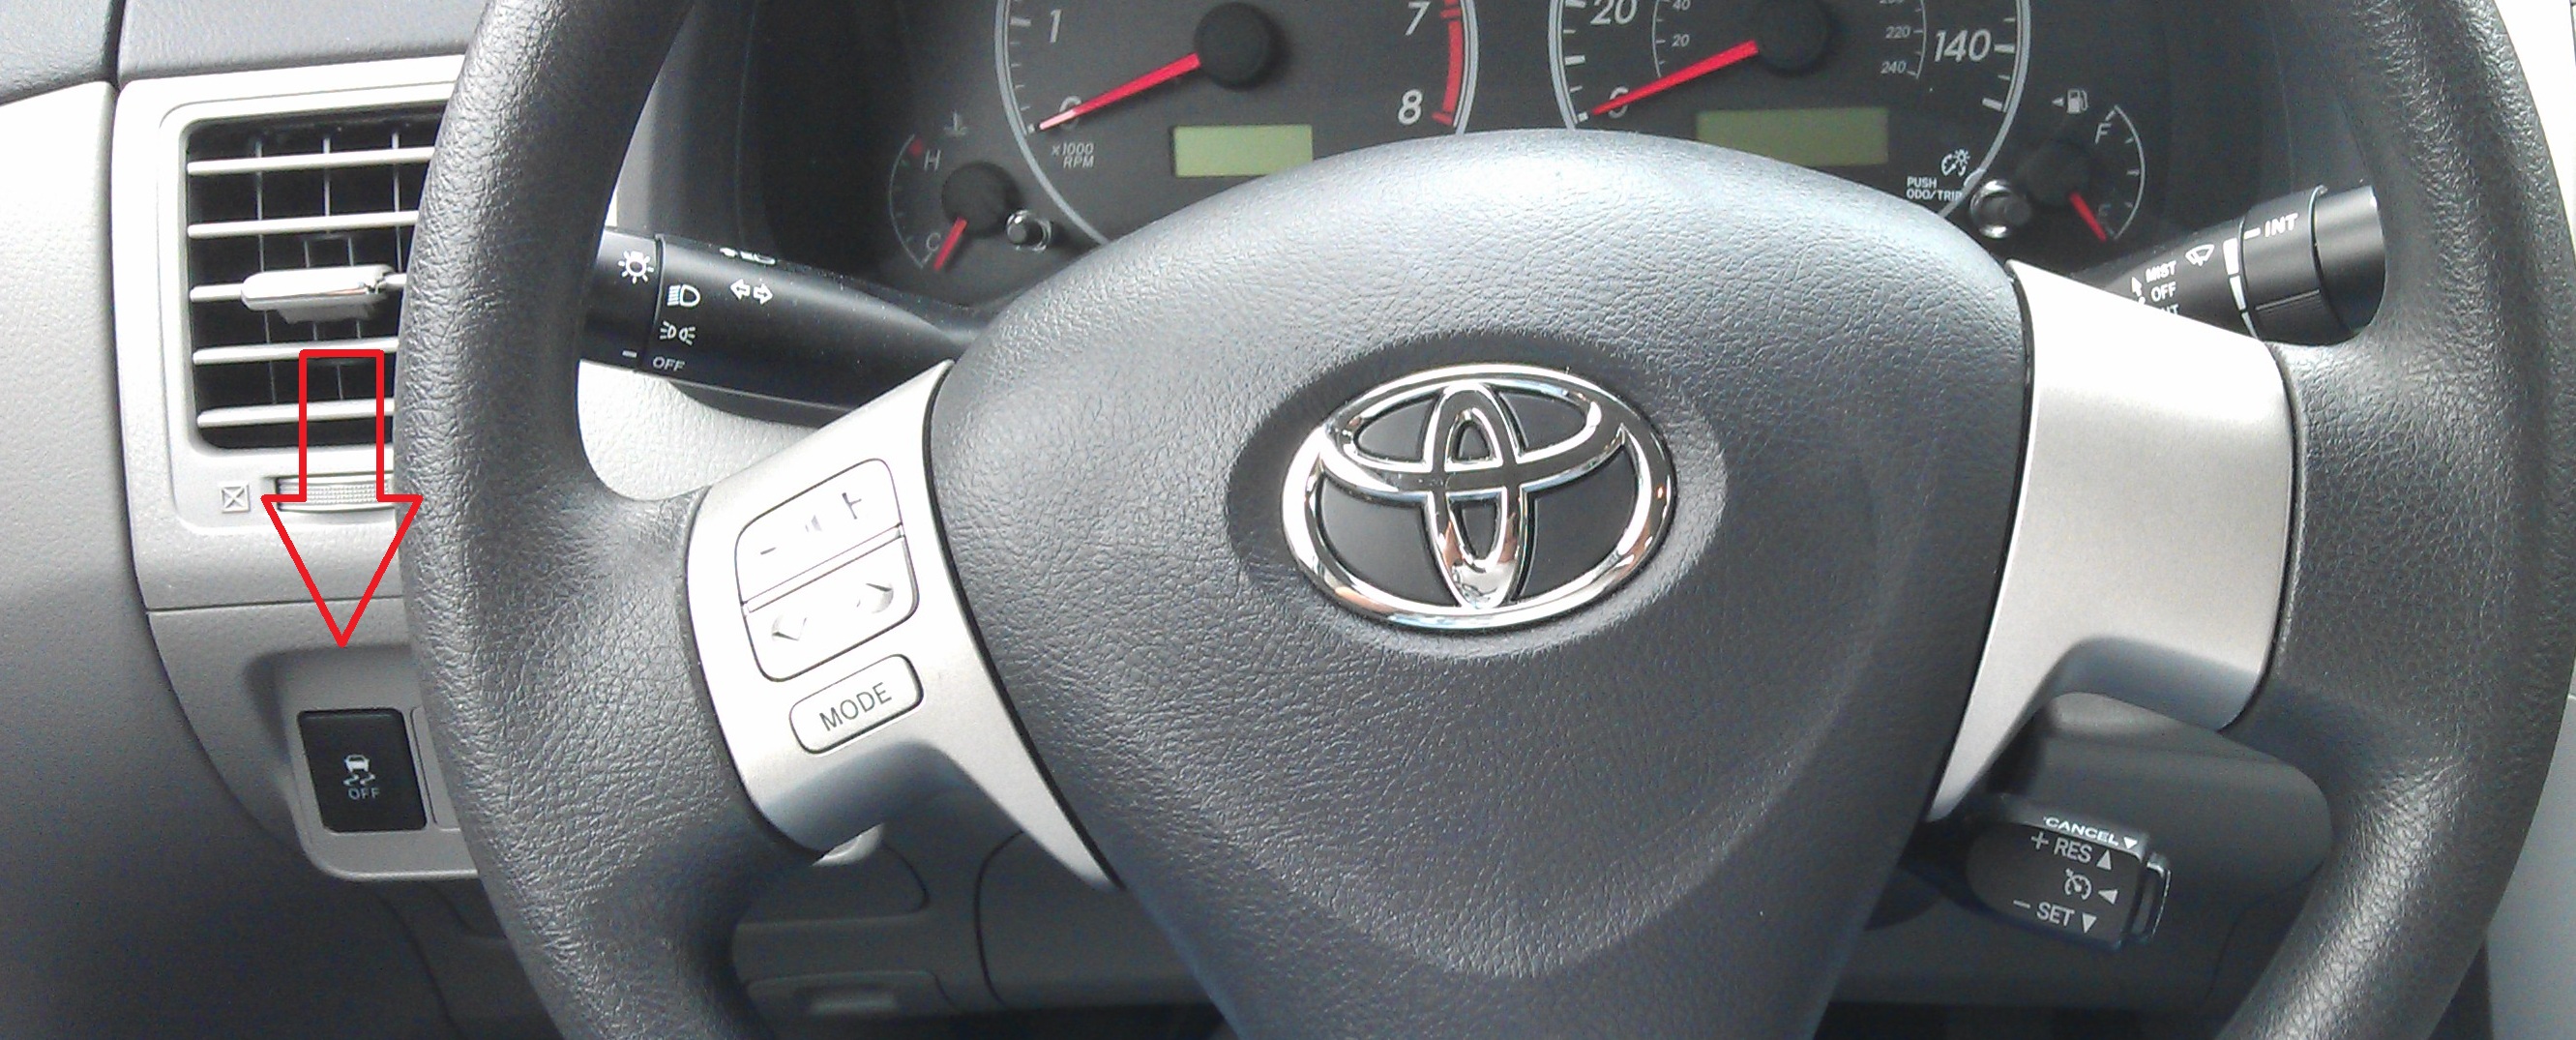 Местоположения выключателя «TRC OFF» Toyota Camry